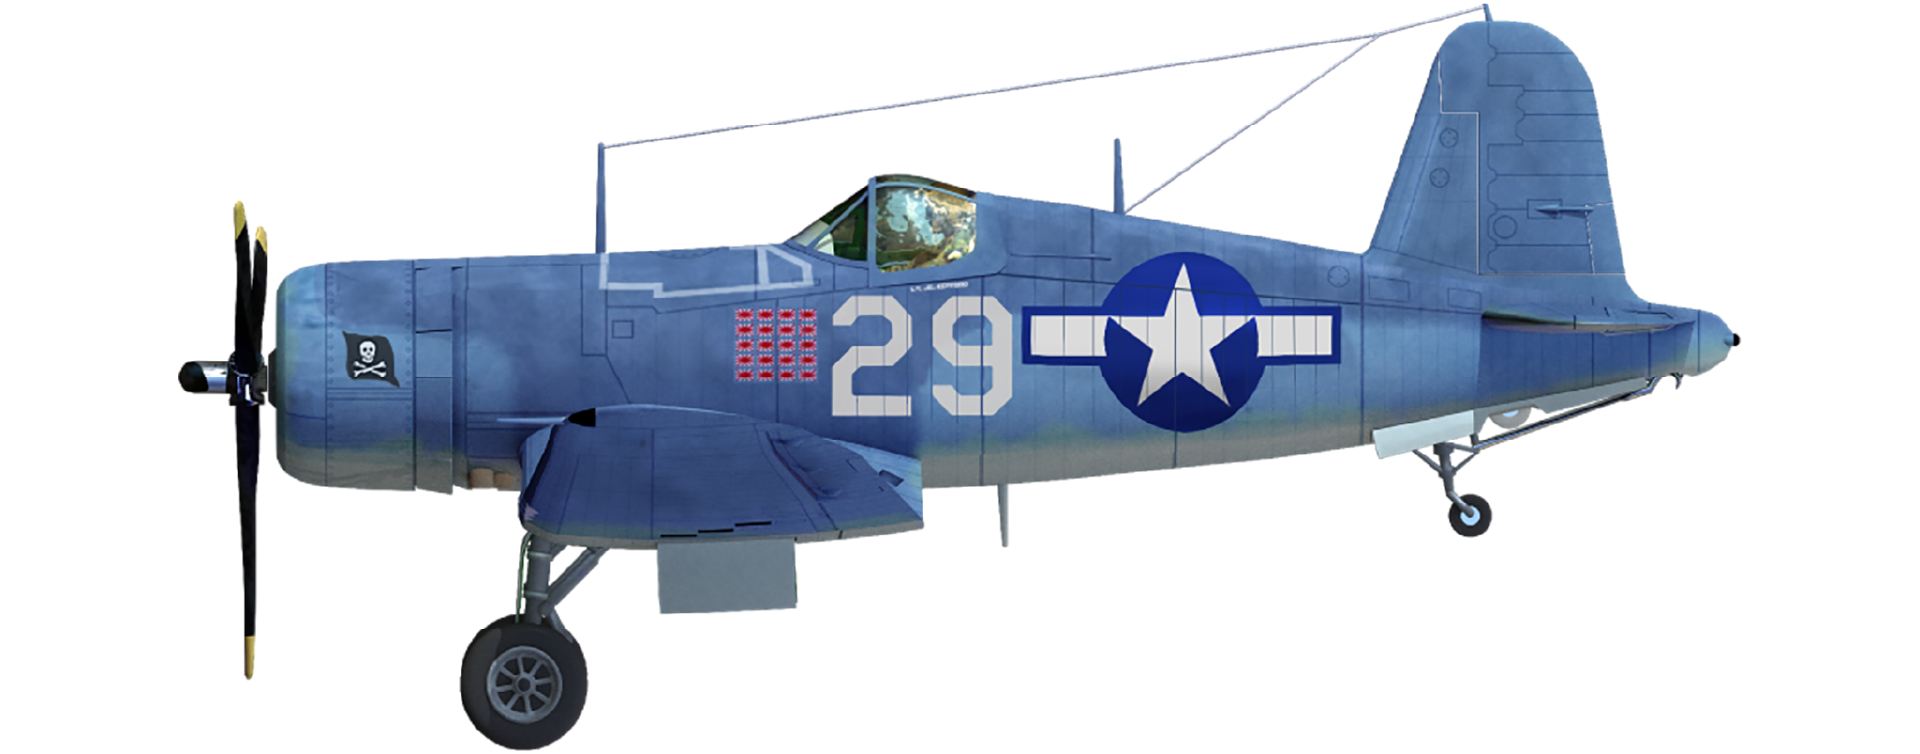 F4U-1A